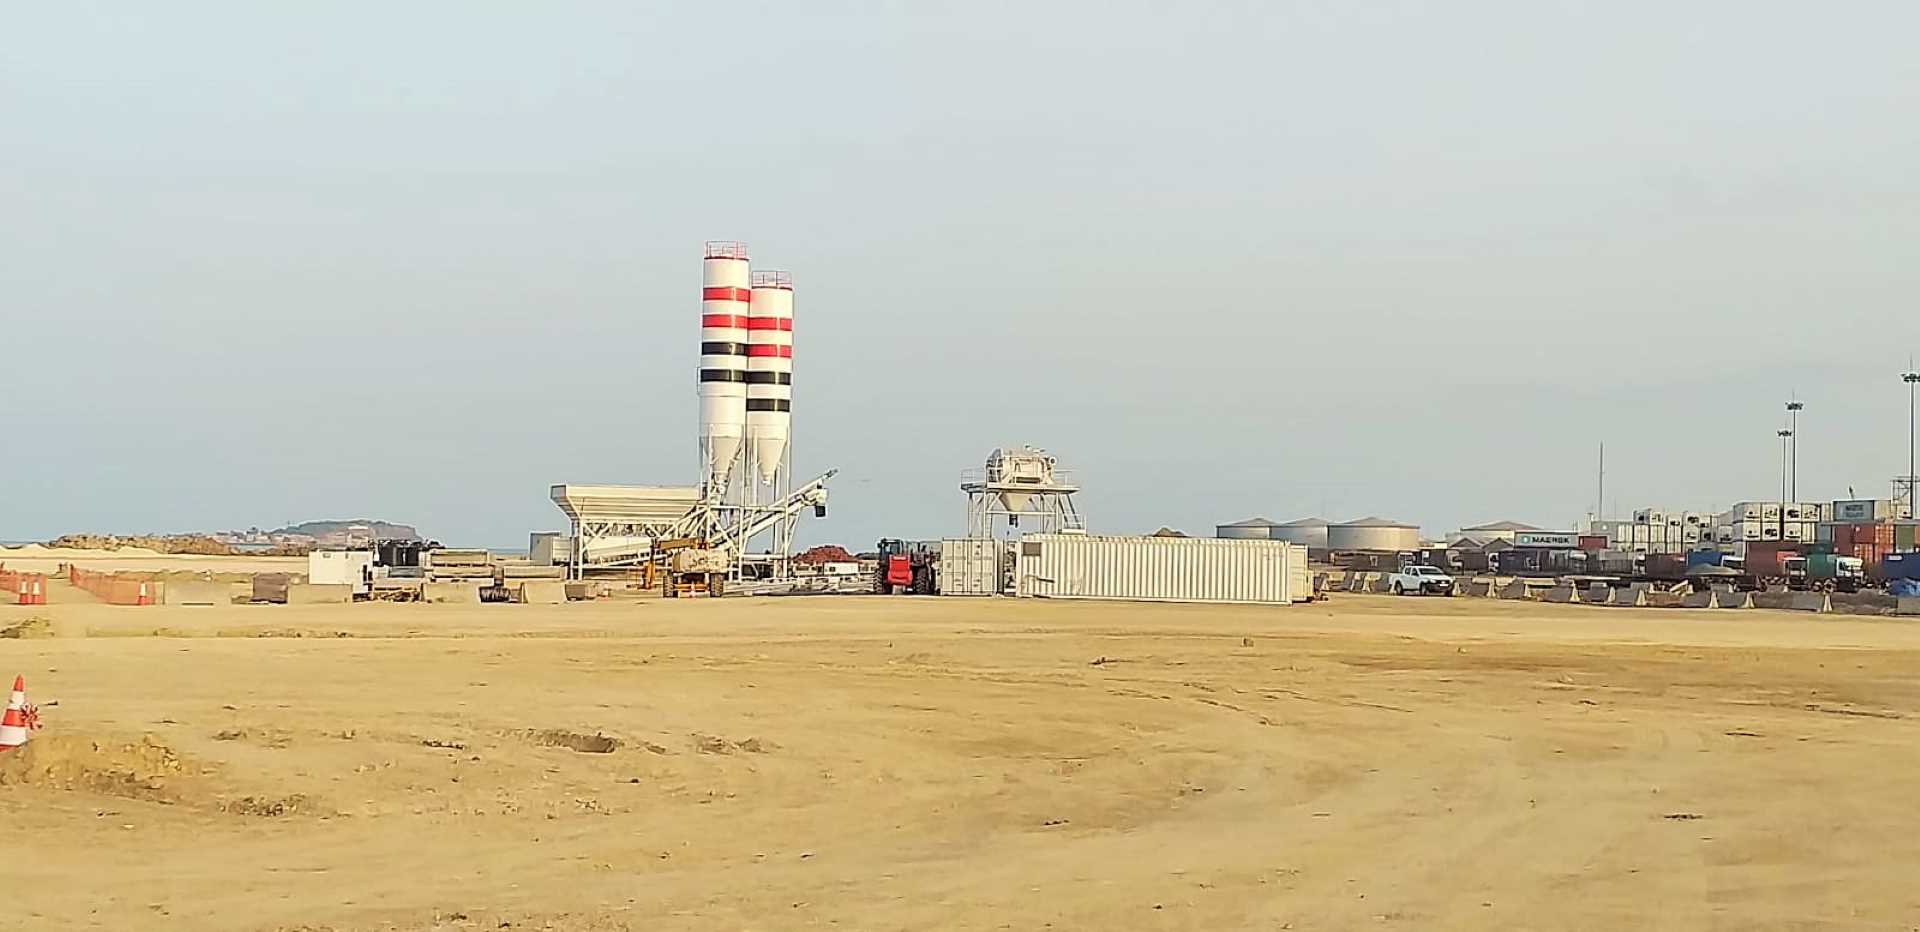 El Mobile Equipment suministra las plantas de hormigón para el Proyecto Tortuga - Ahmeyim, responsables de producir 125 000 m3 de hormigón en Dakar - Eiffage Infraestructuras